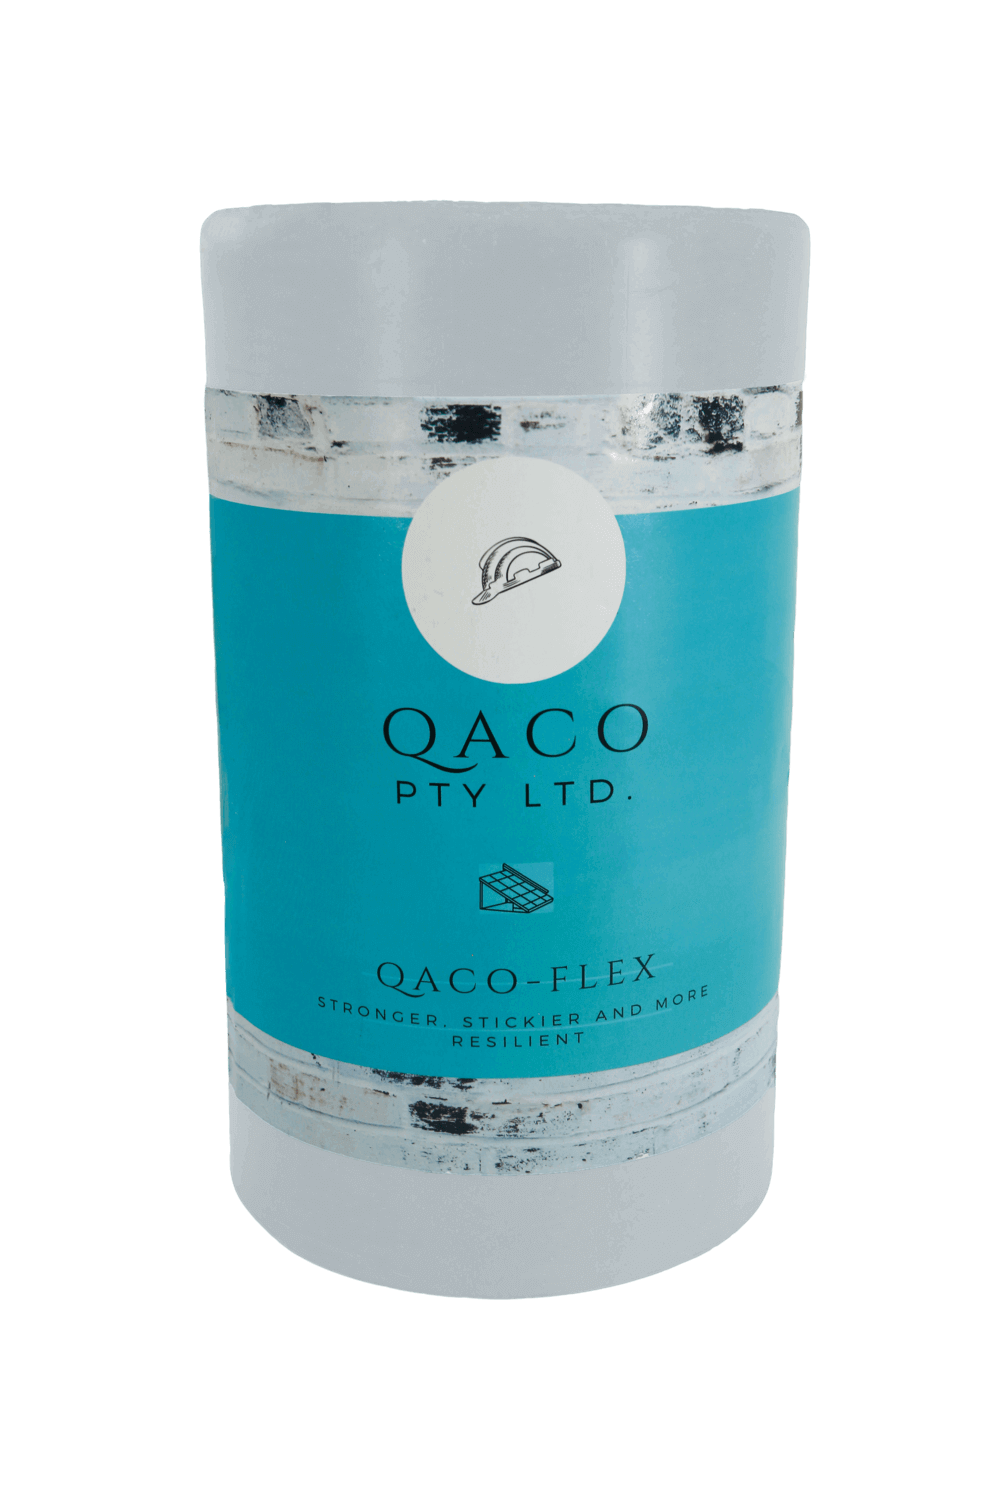 QACO-FLEX Lead-Free Roof Flashing Product